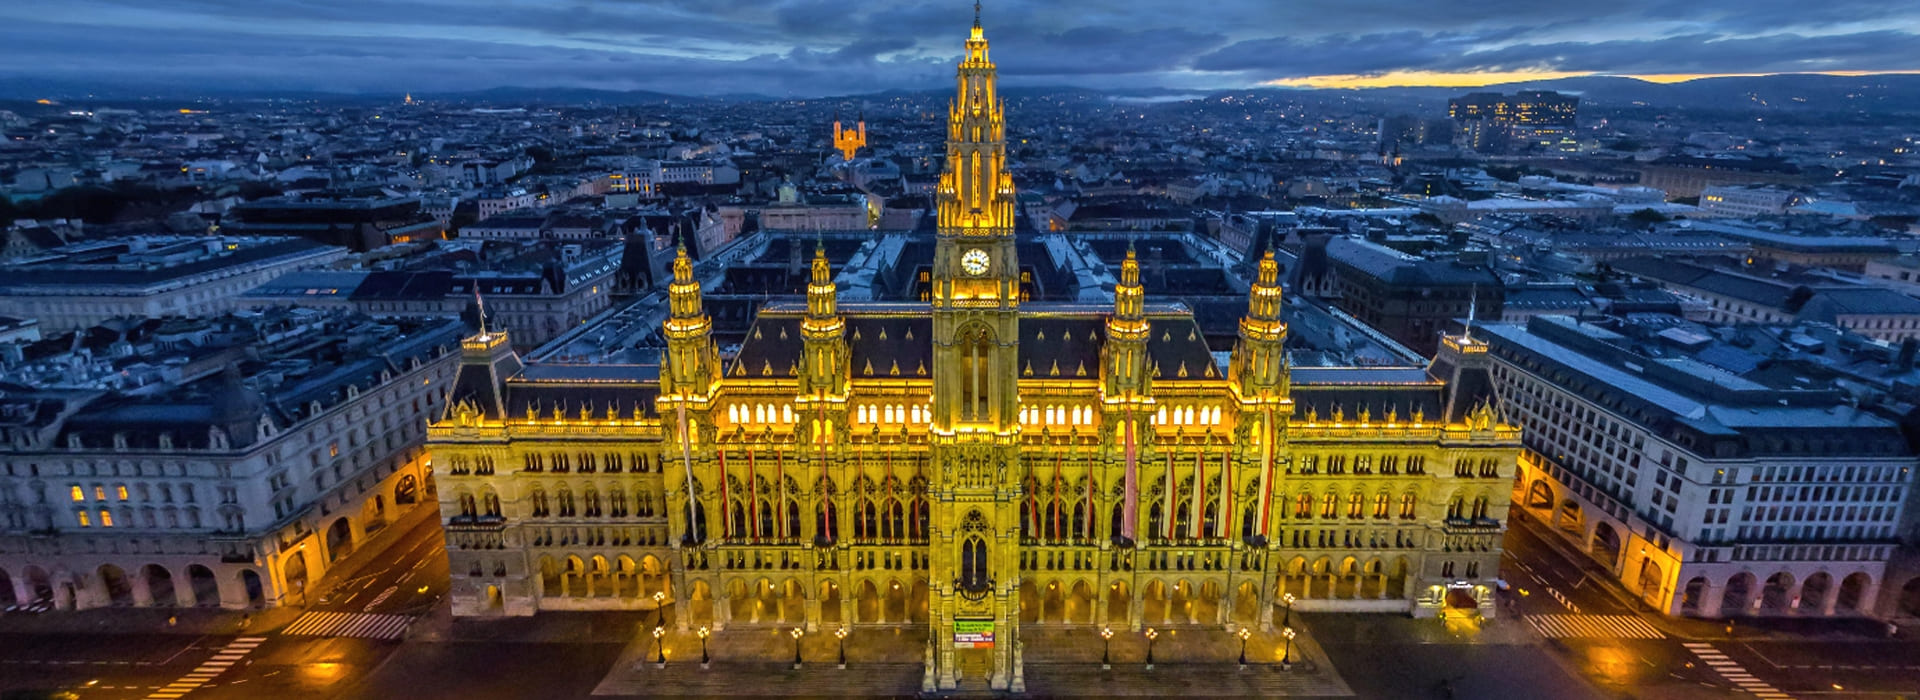 Вена столица австрии достопримечательности фото с описанием